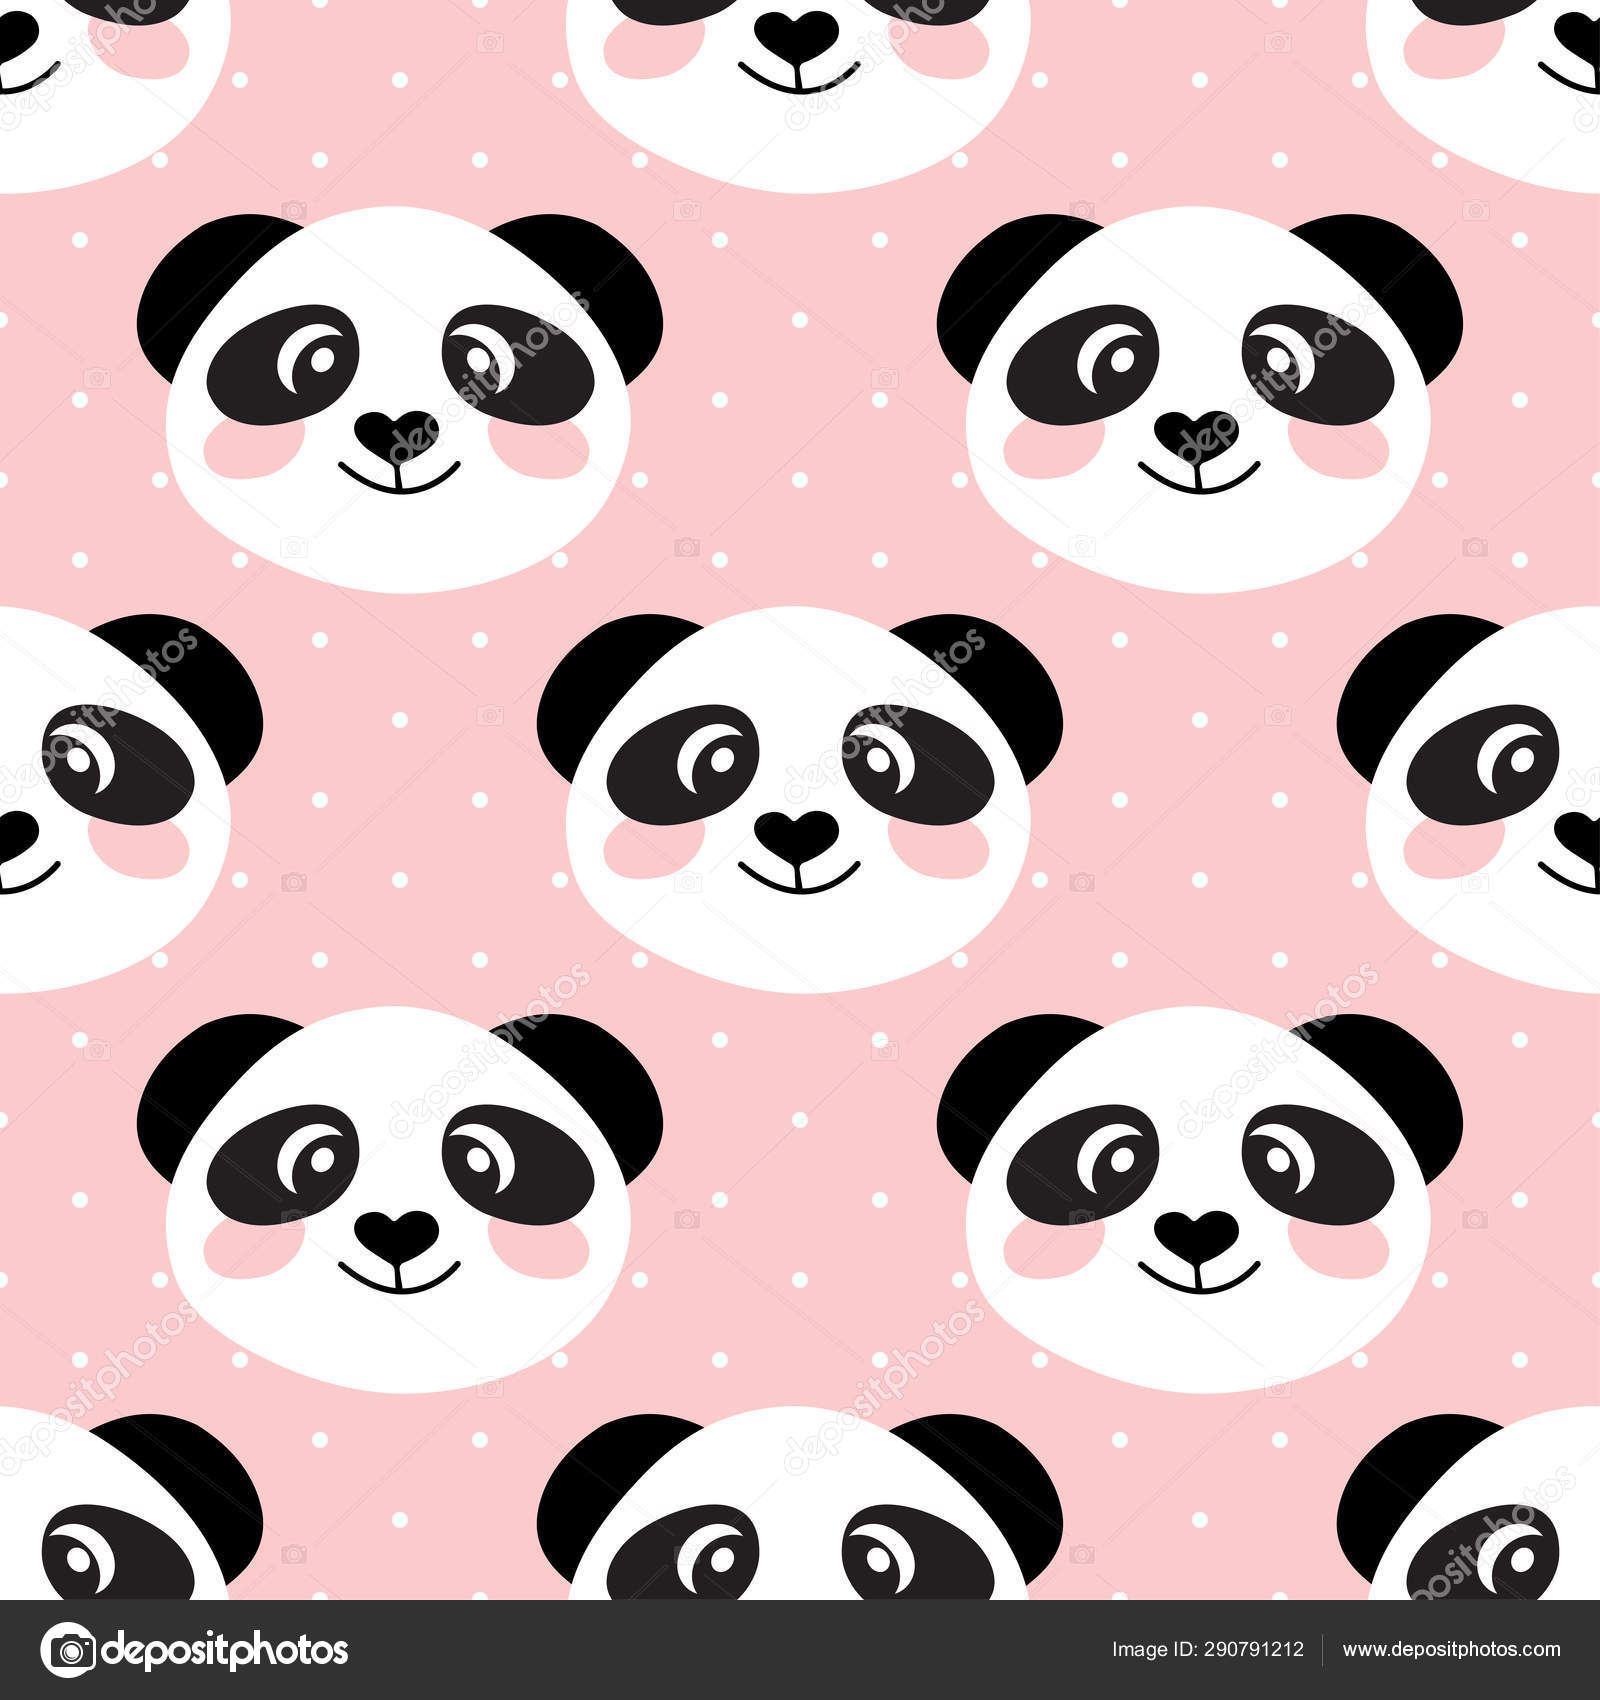 Cute panda face. Seamless cartoon